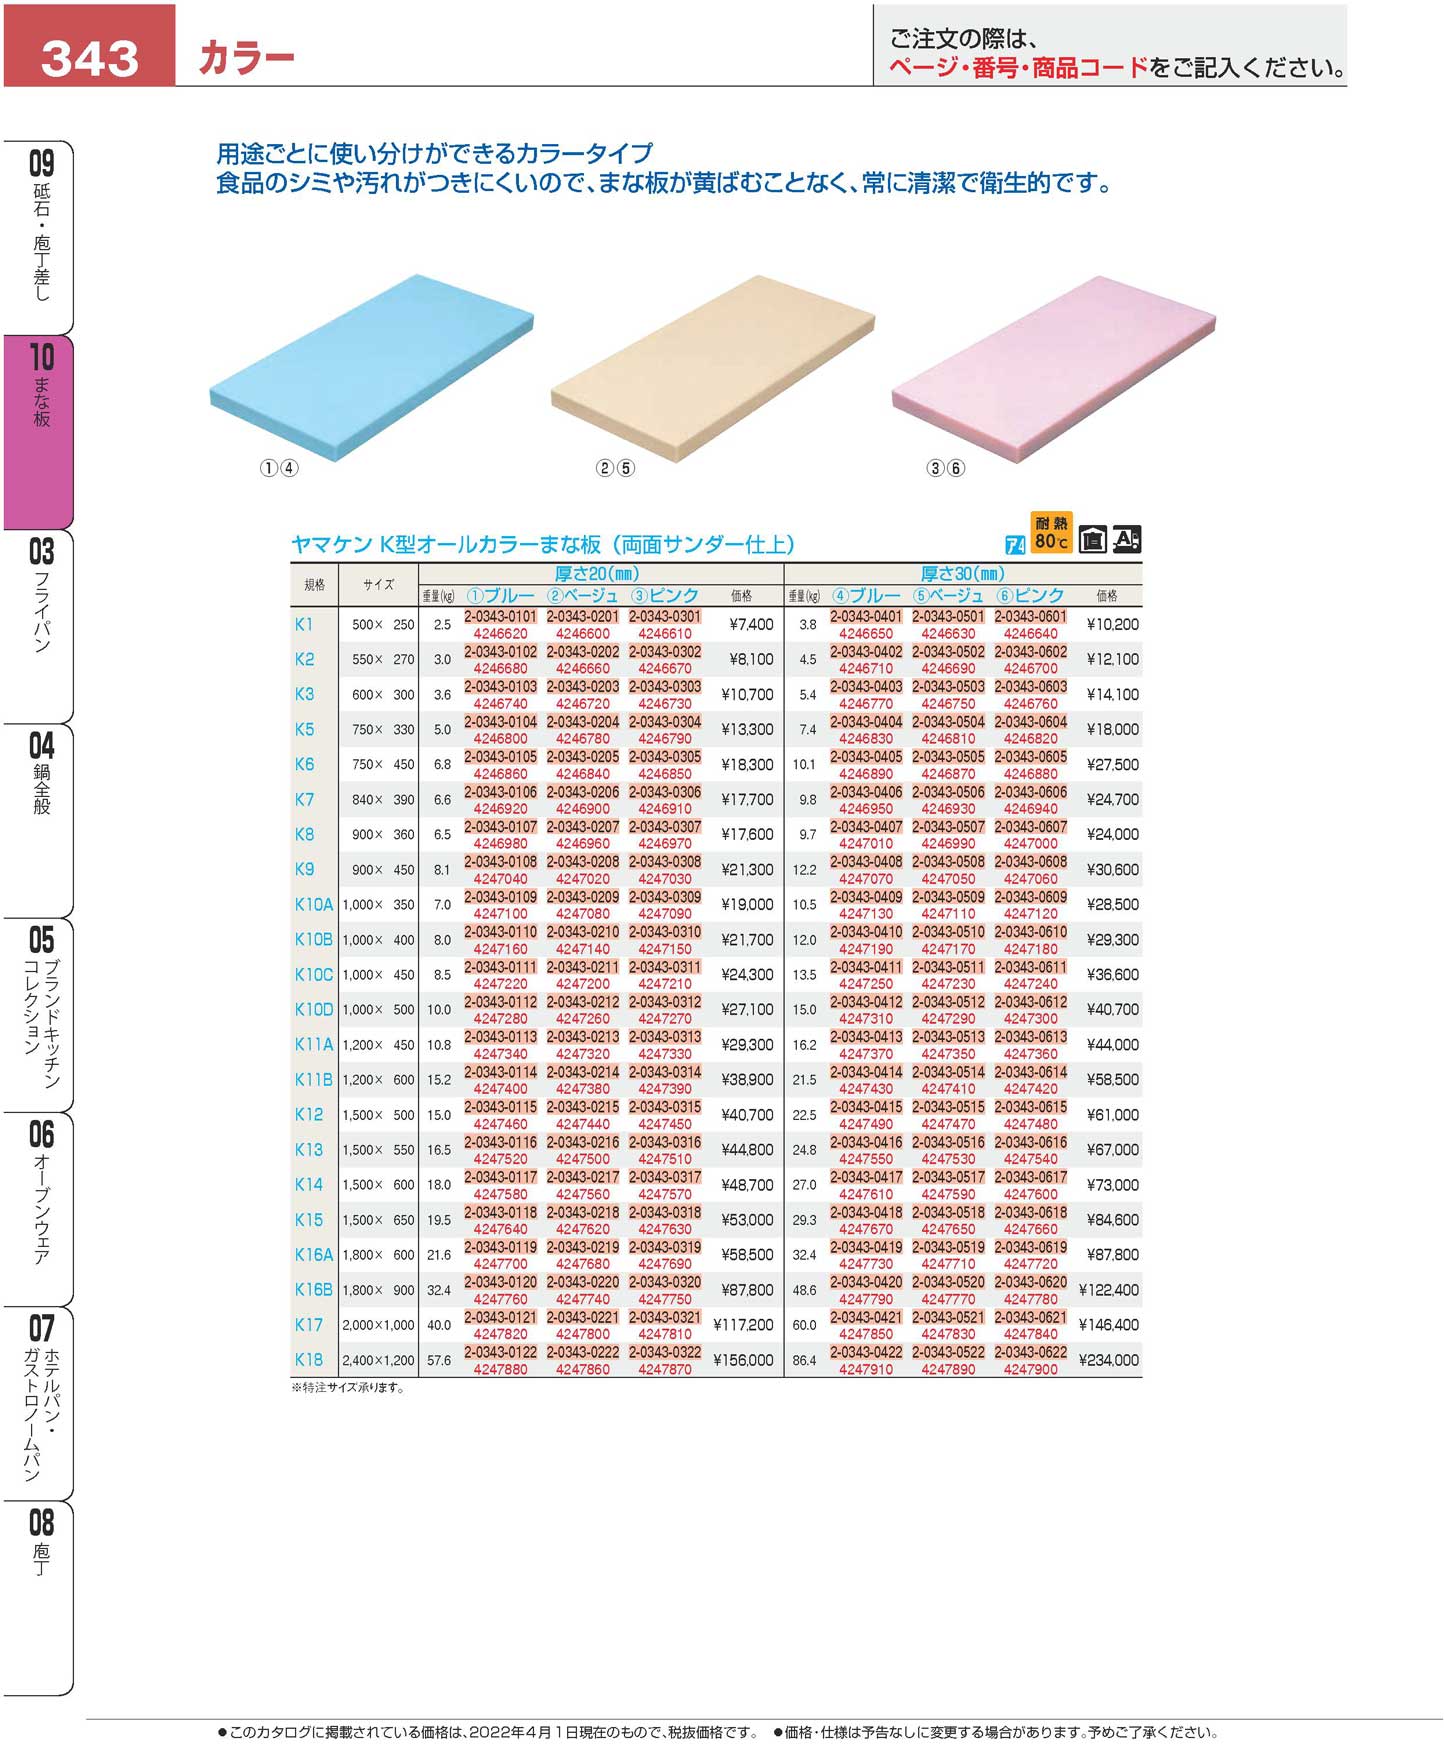 ヤマケン K型オールカラーまな板（両面シボ付） K16A 1800 600 30mm 32.4kg ベージュ